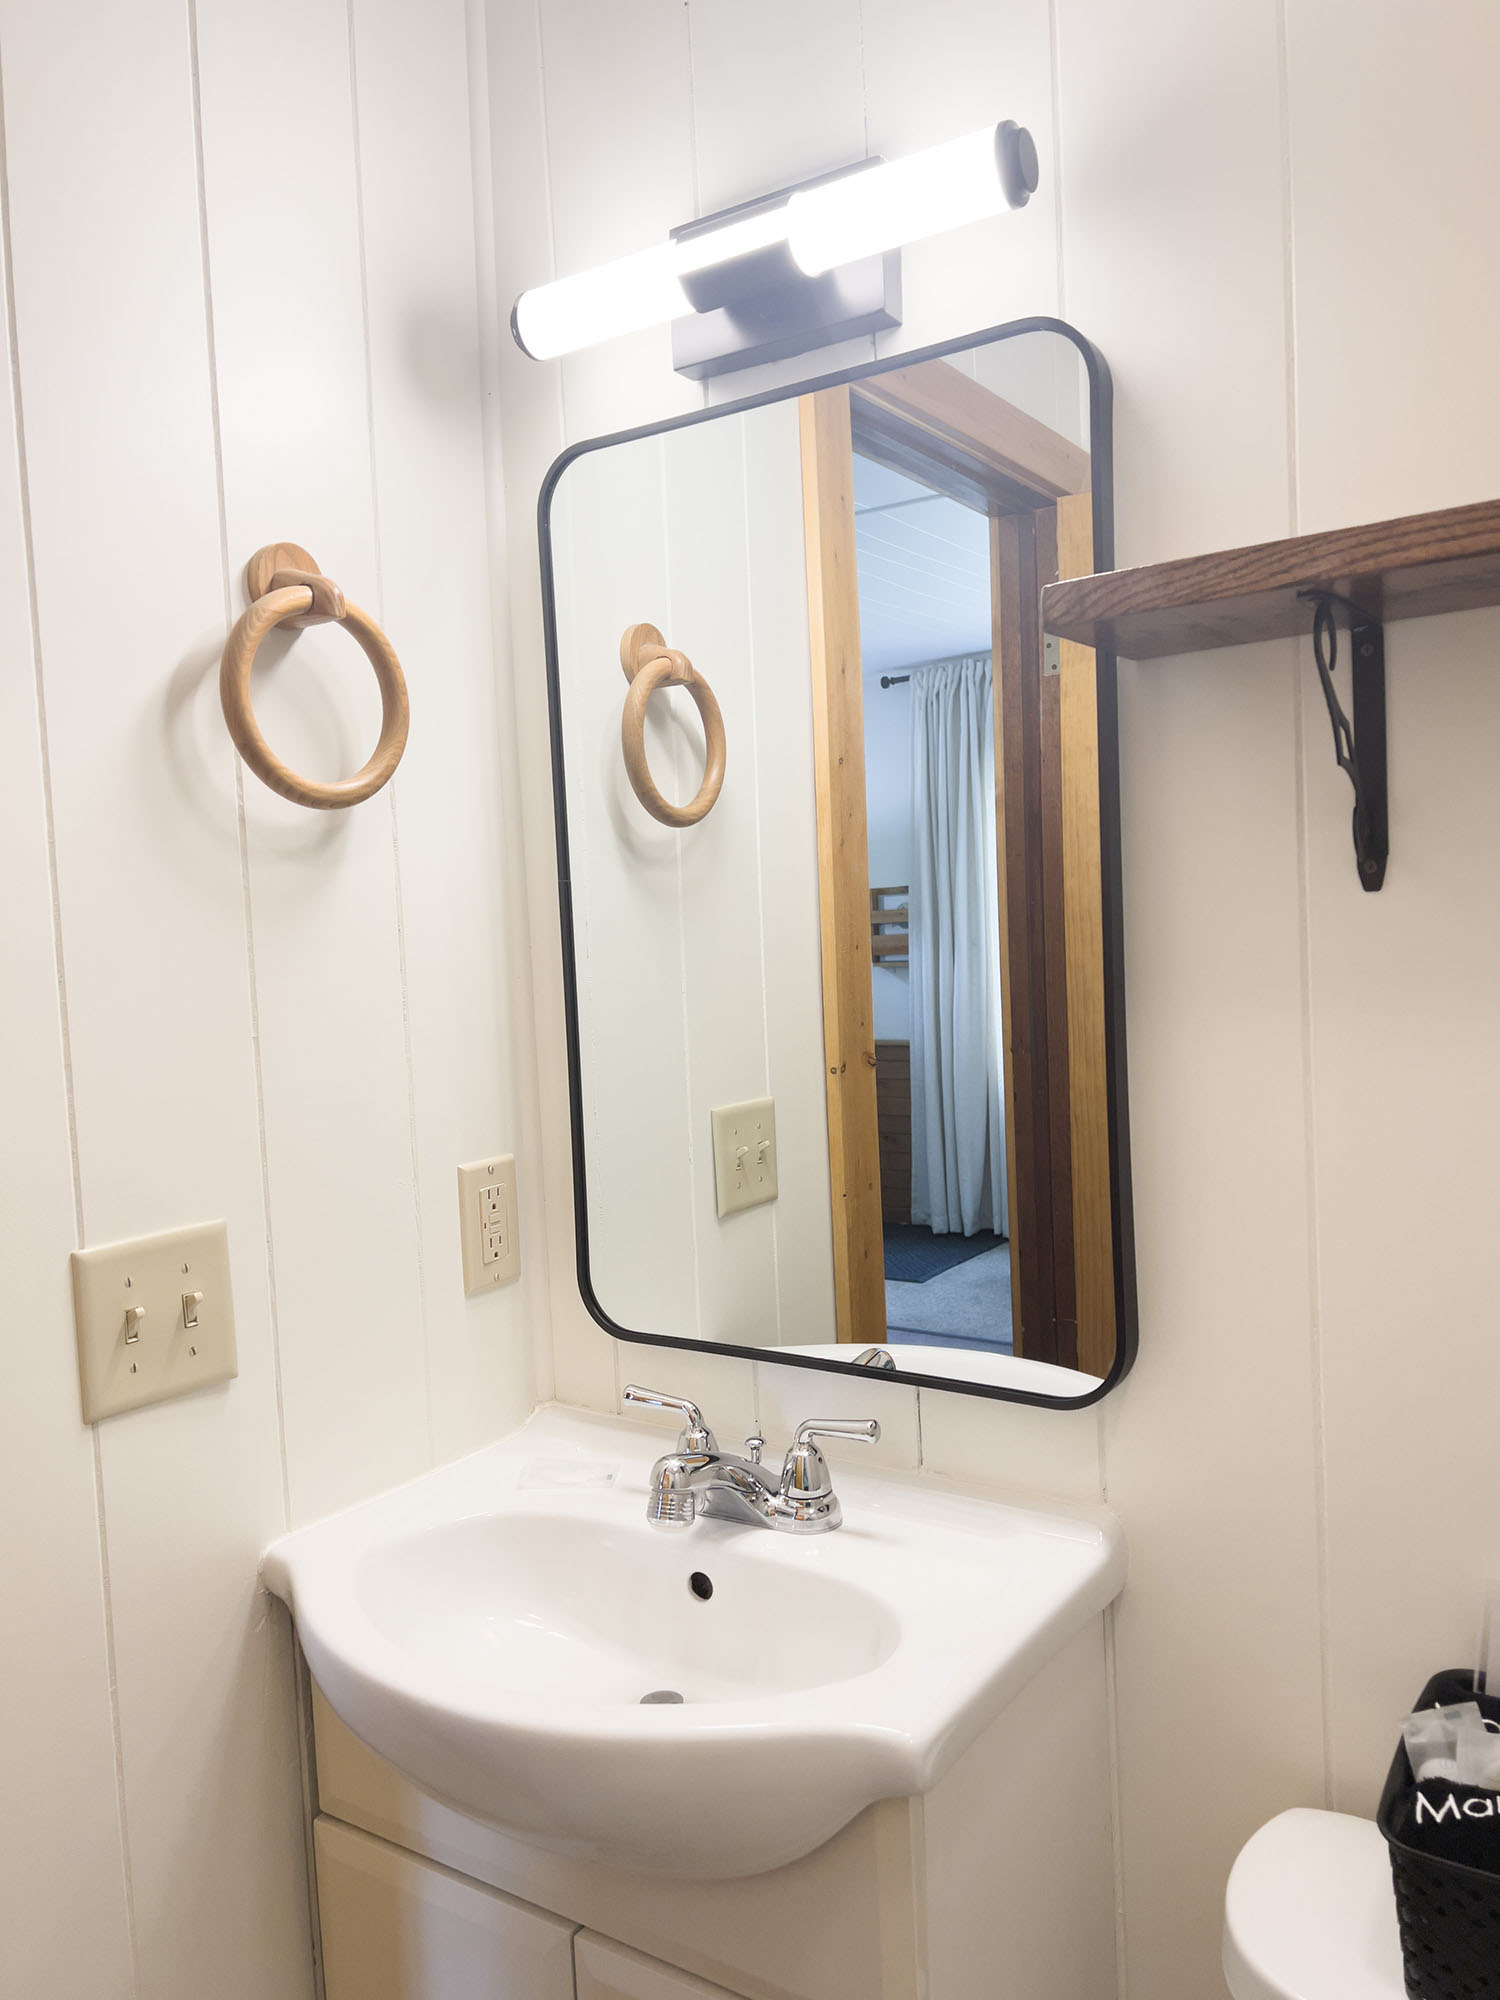 Cabin 2 - Bathroom at Sleeping Bear Resort